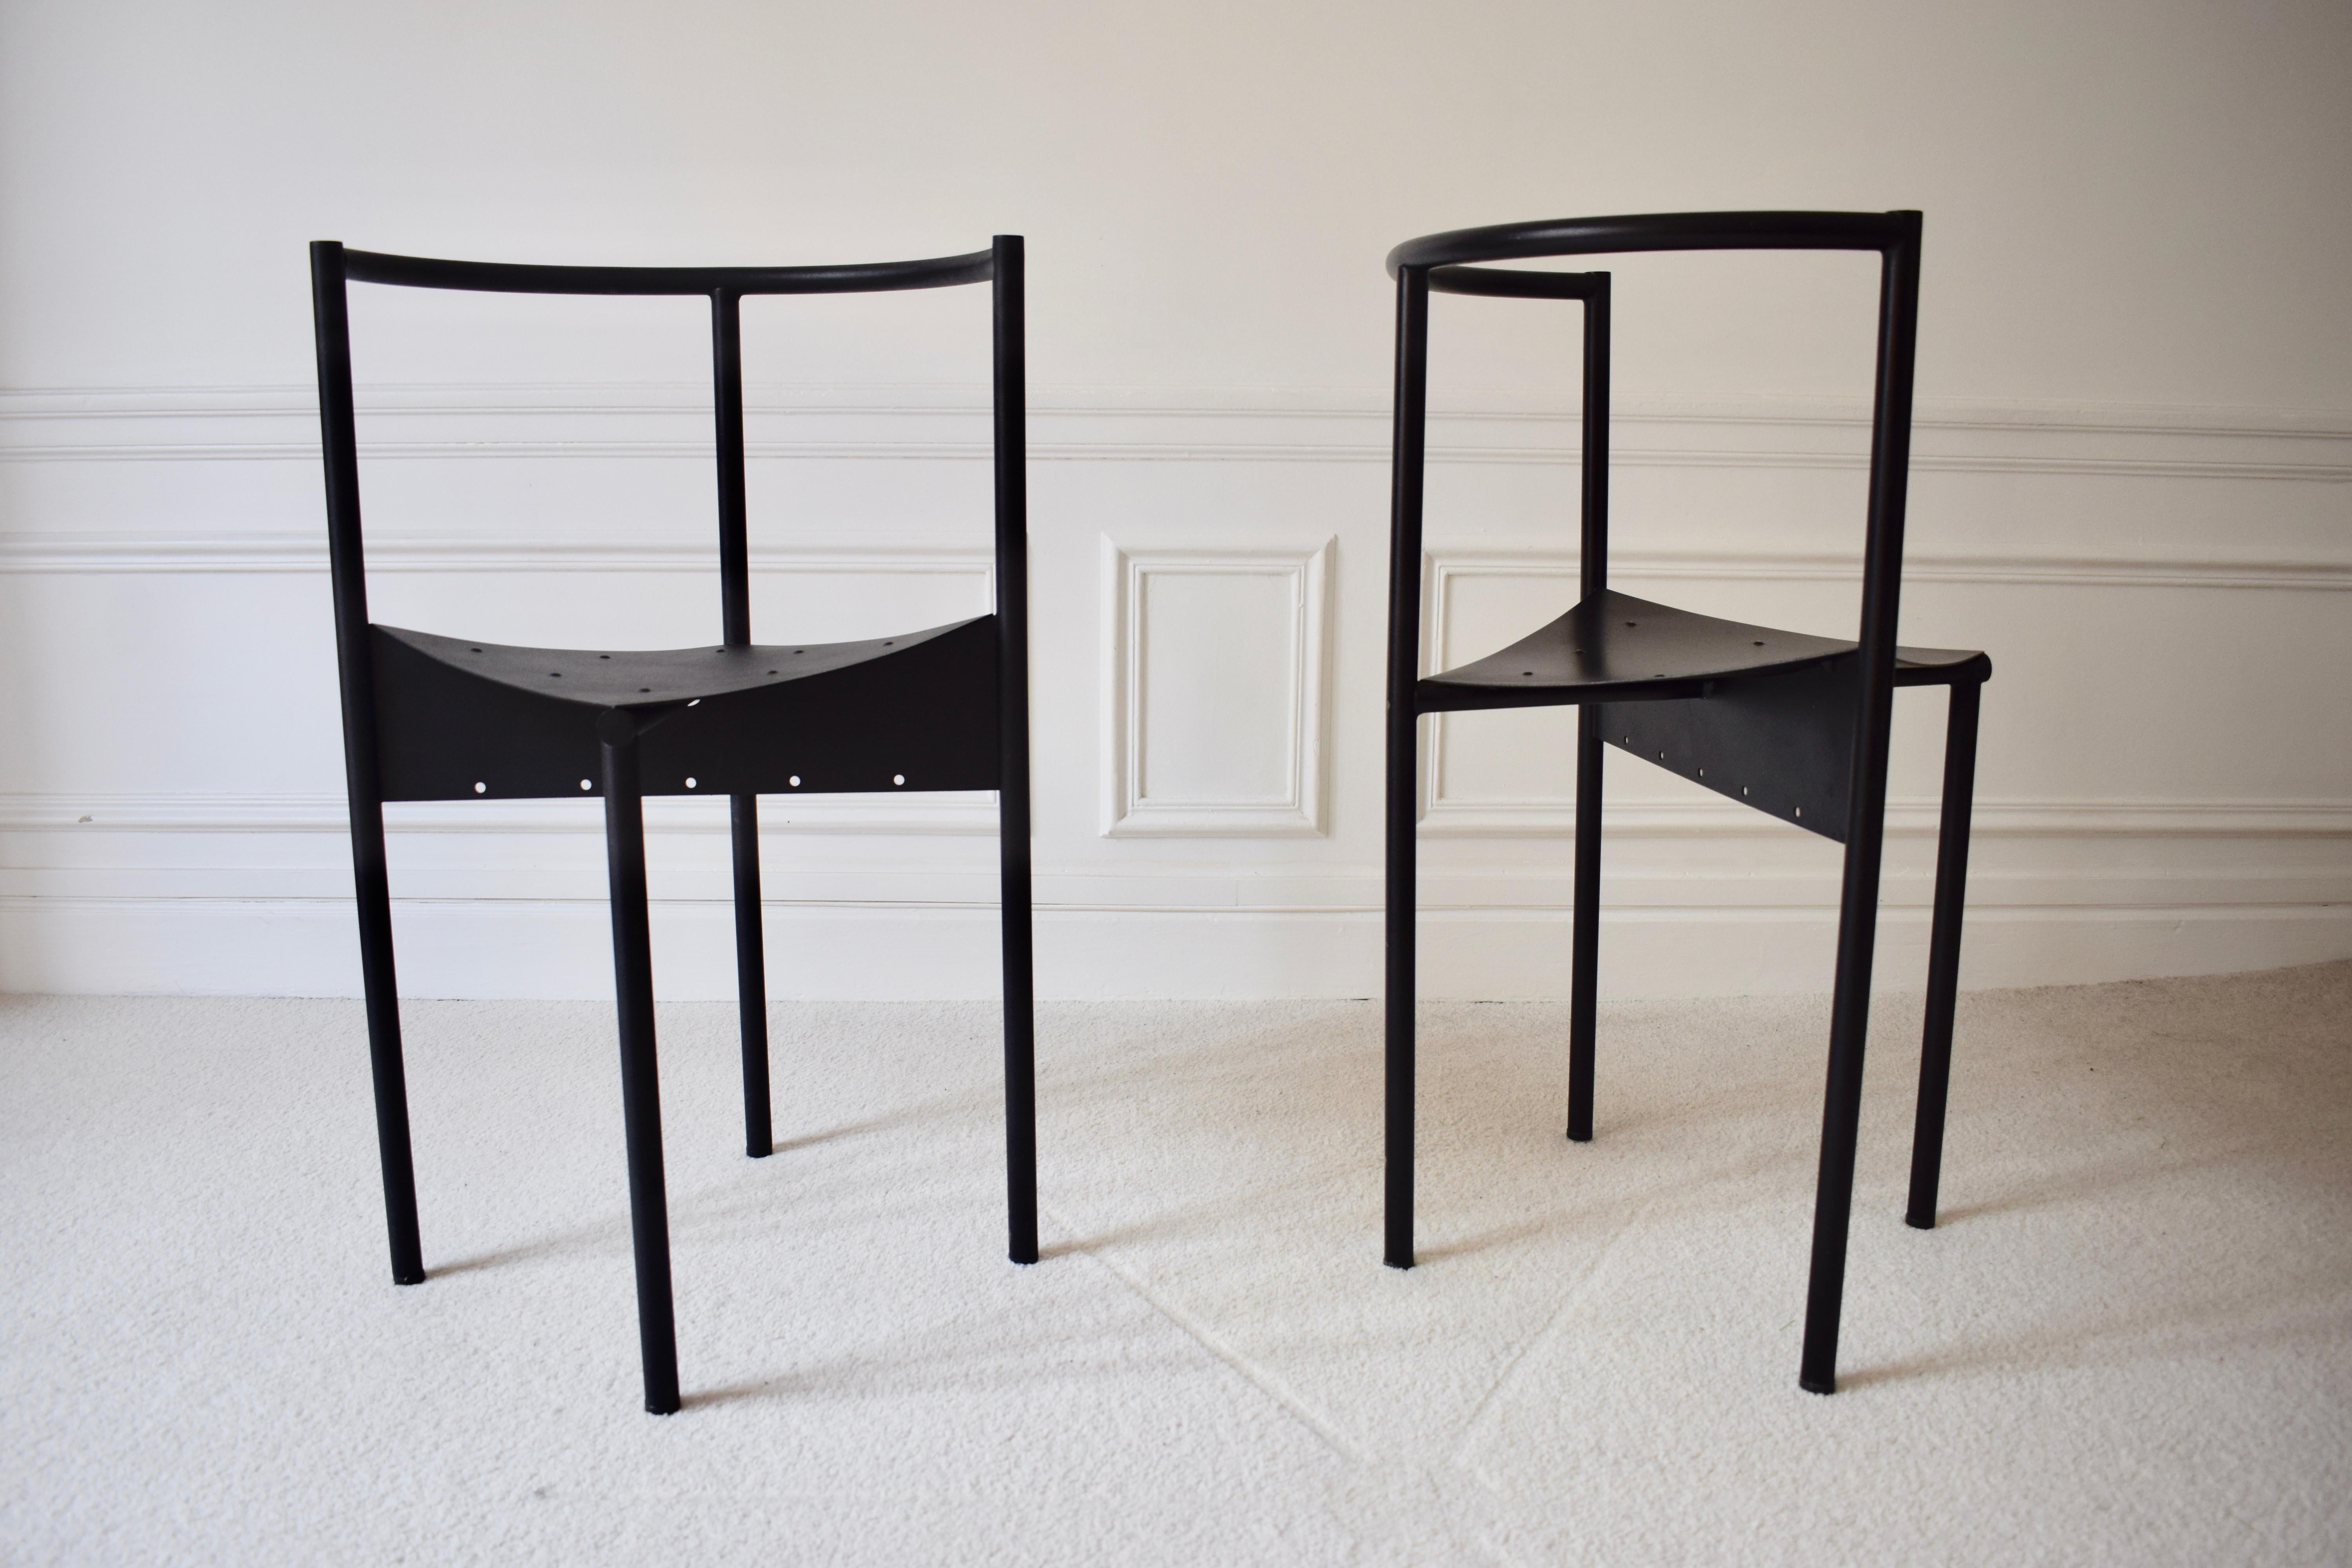 Paire de chaises Wendy Wright de Philippe Starck

Edition Disform - 1986

Très bel état général

Hauteur : 75 cm - L : 48 cm - P : 47 cm